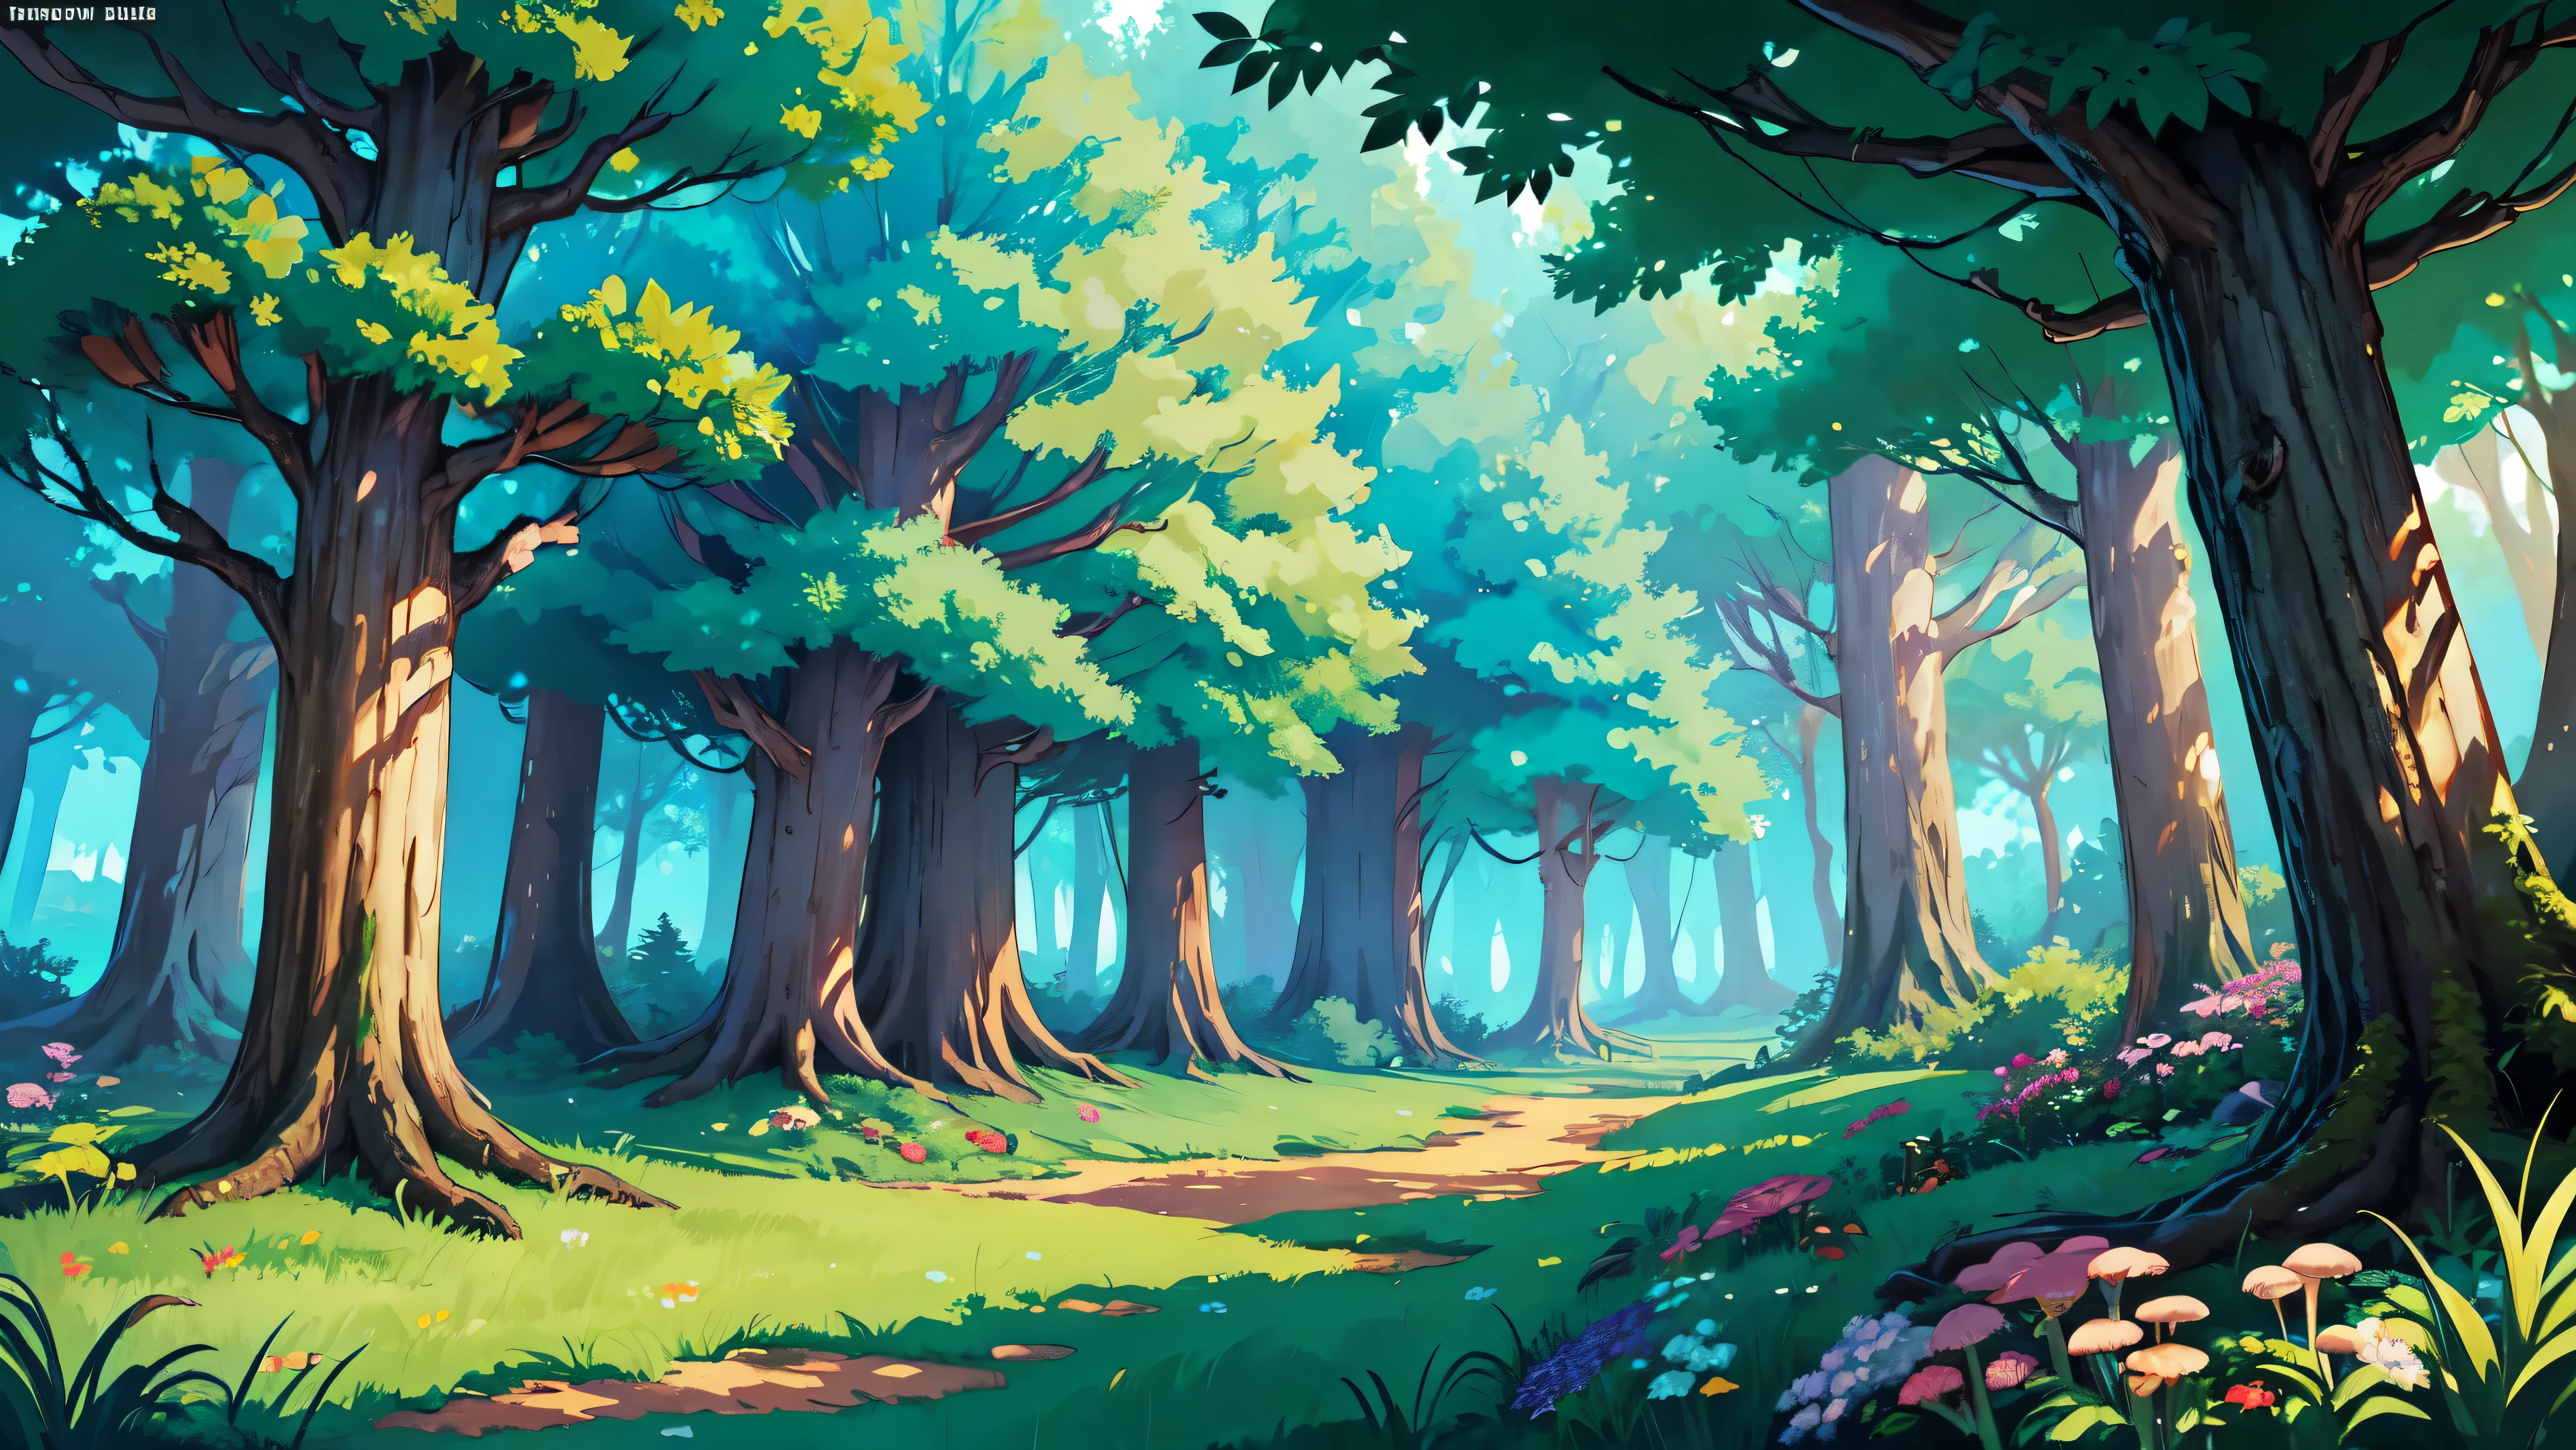 ((明亮的)), Cartoon beautiful fantasy fairy 森林里面 with trails and trees on a sunny day, 森林植物, 美丽的仙女蘑菇, 野生美丽的花朵, 详细的, 详细的 background artwork masterpiece, Mobile 游戏背景, 游戏背景, 2D游戏美术背景, 森林背景, scenery art 详细的, 景观艺术品, 手机游戏艺术, 2d 游戏背景, 动漫背景艺术, 森林空地景观, 动漫乡村风景, 森林里面, elf 森林背景, 森林环境, 详细的游戏艺术, 4k